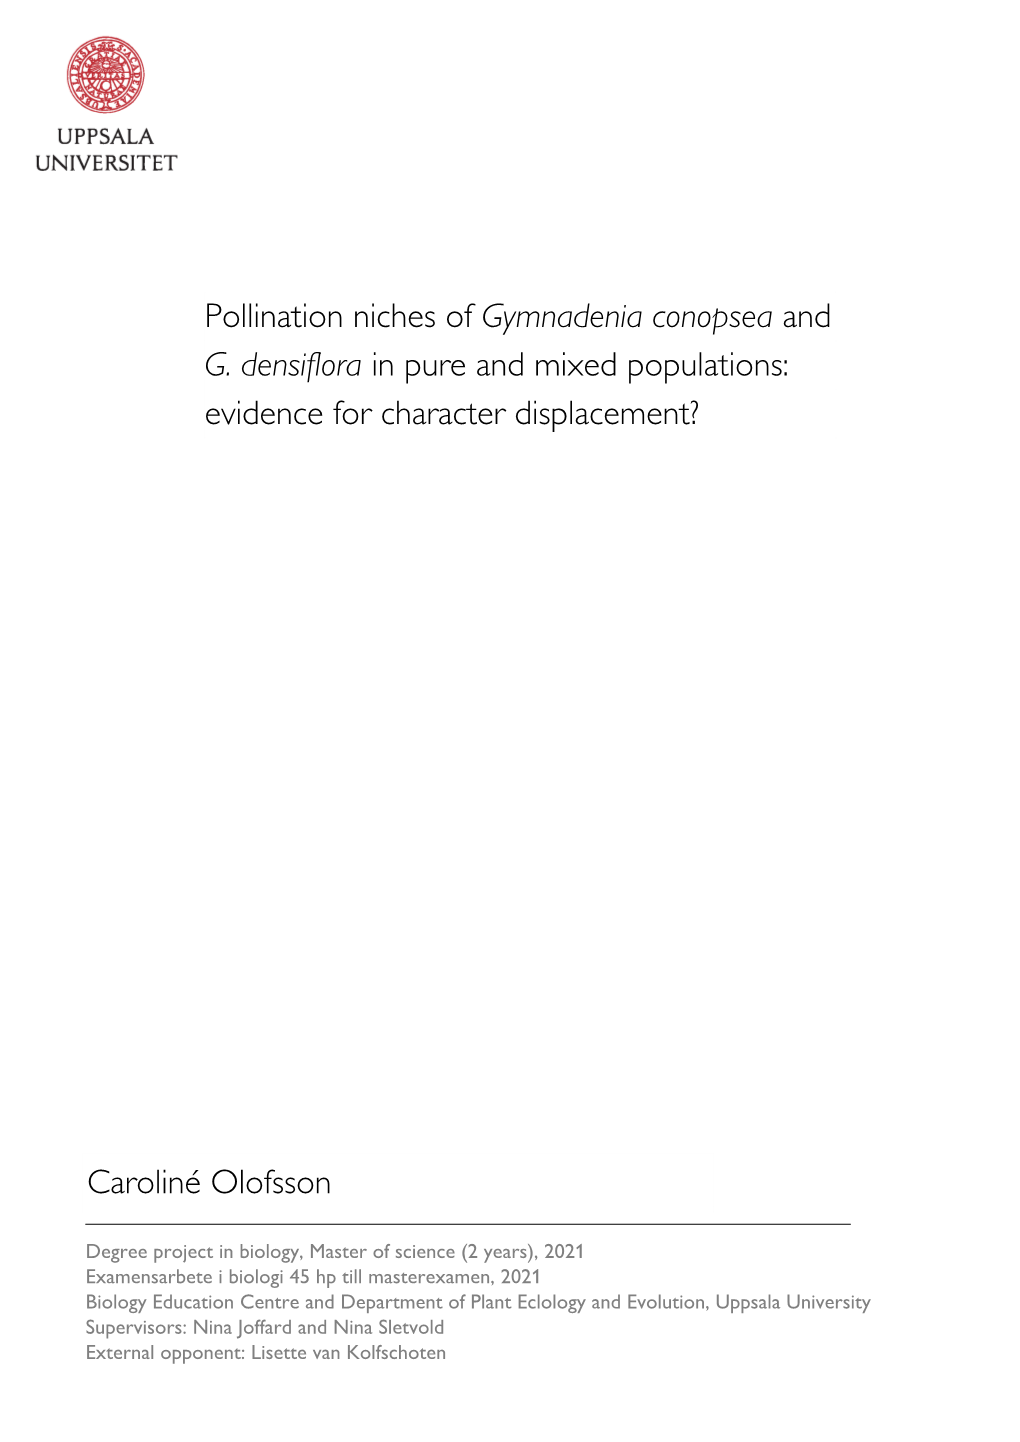 Pollination Niches of Gymnadenia Conopsea and G. Densiflorain Pure